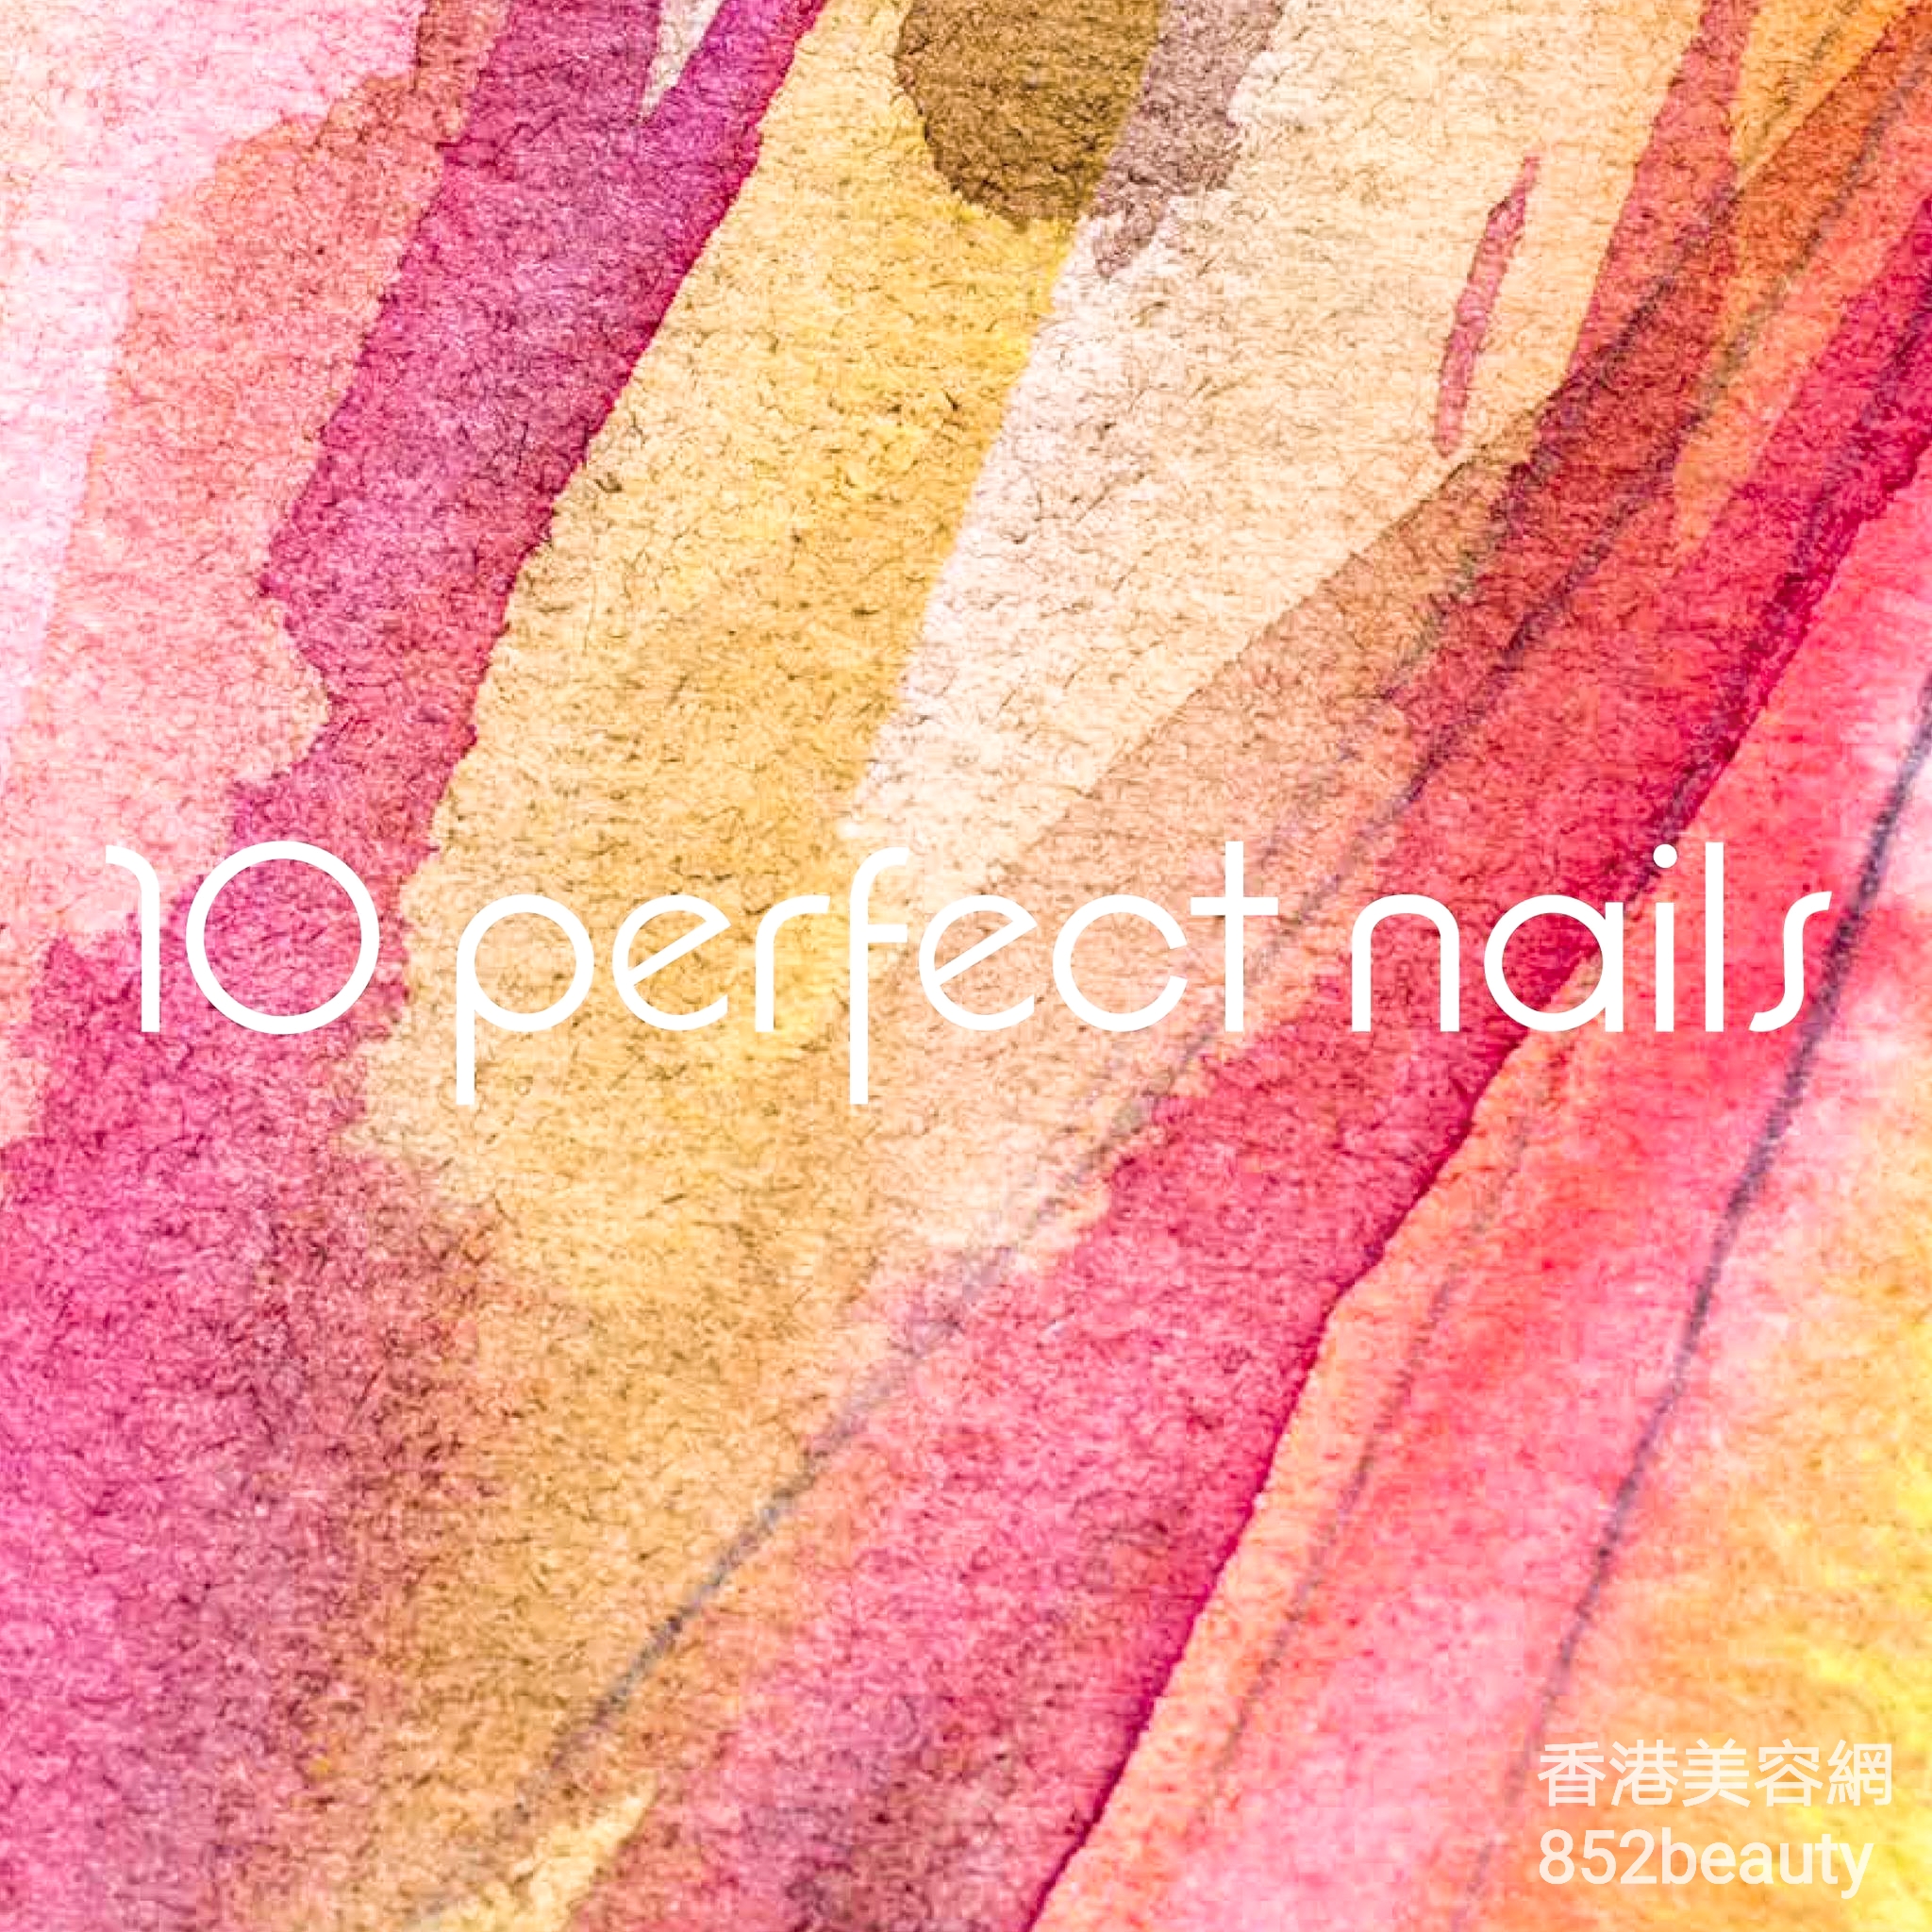 美容院: 10 Perfect Nails (中環店)